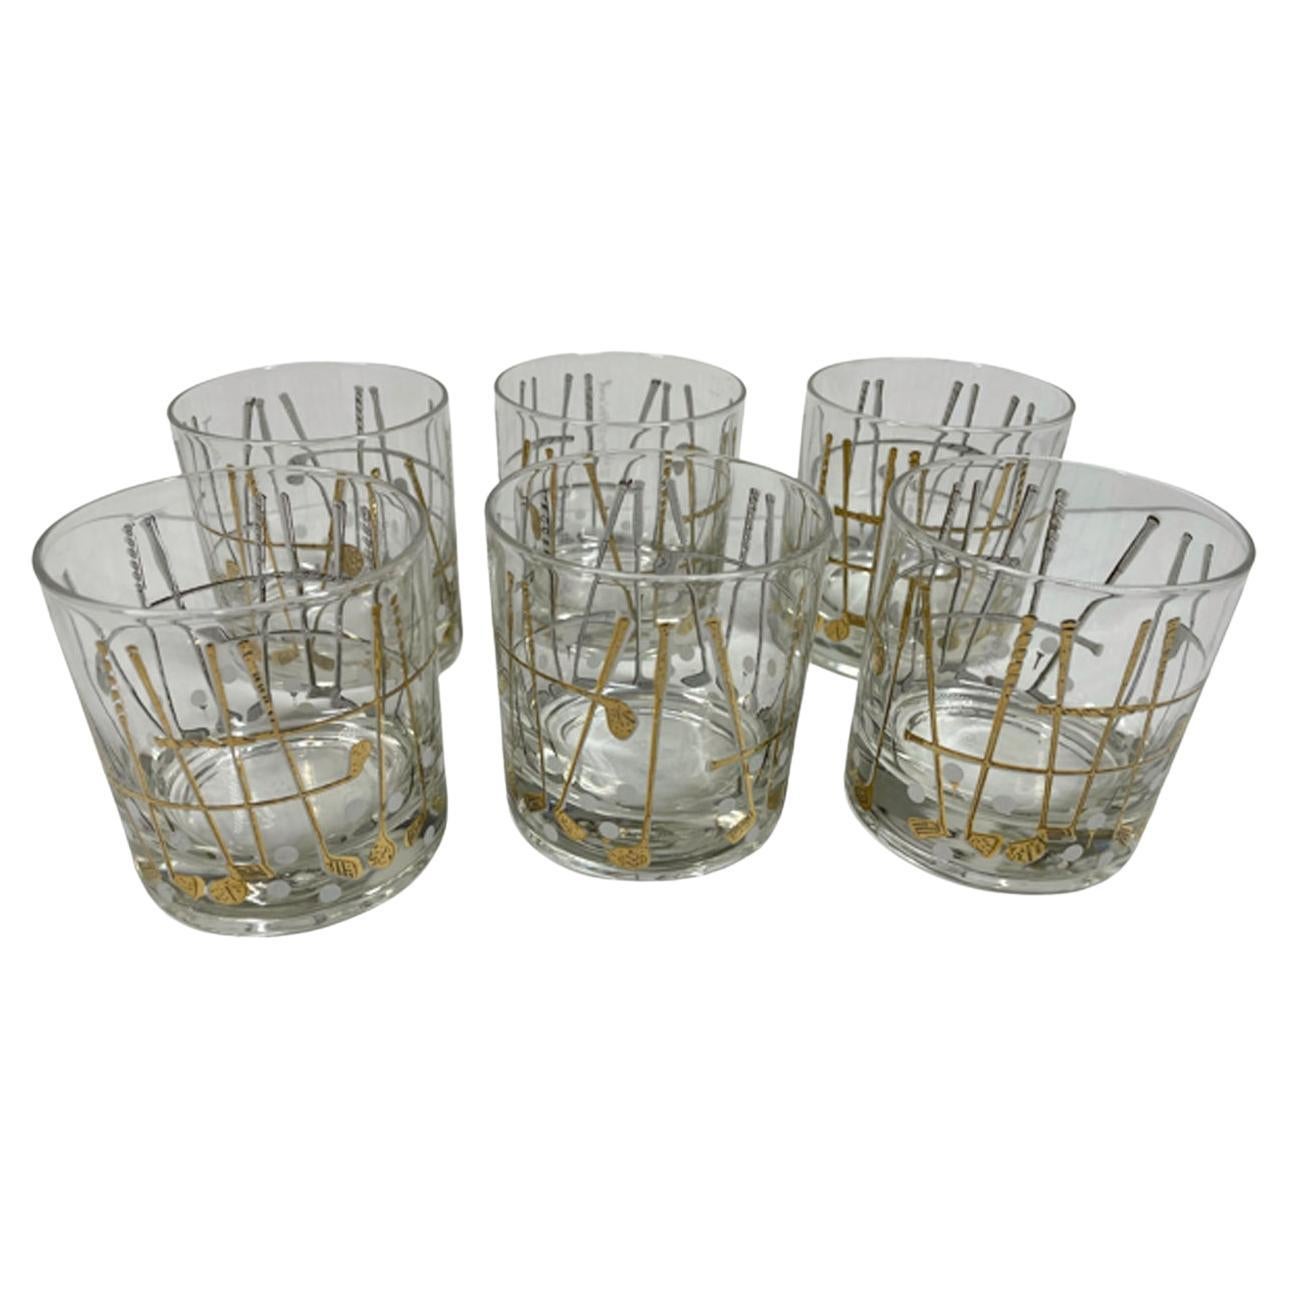 Six verres Rocks conçus par Georges Briard à motif « Golf » 